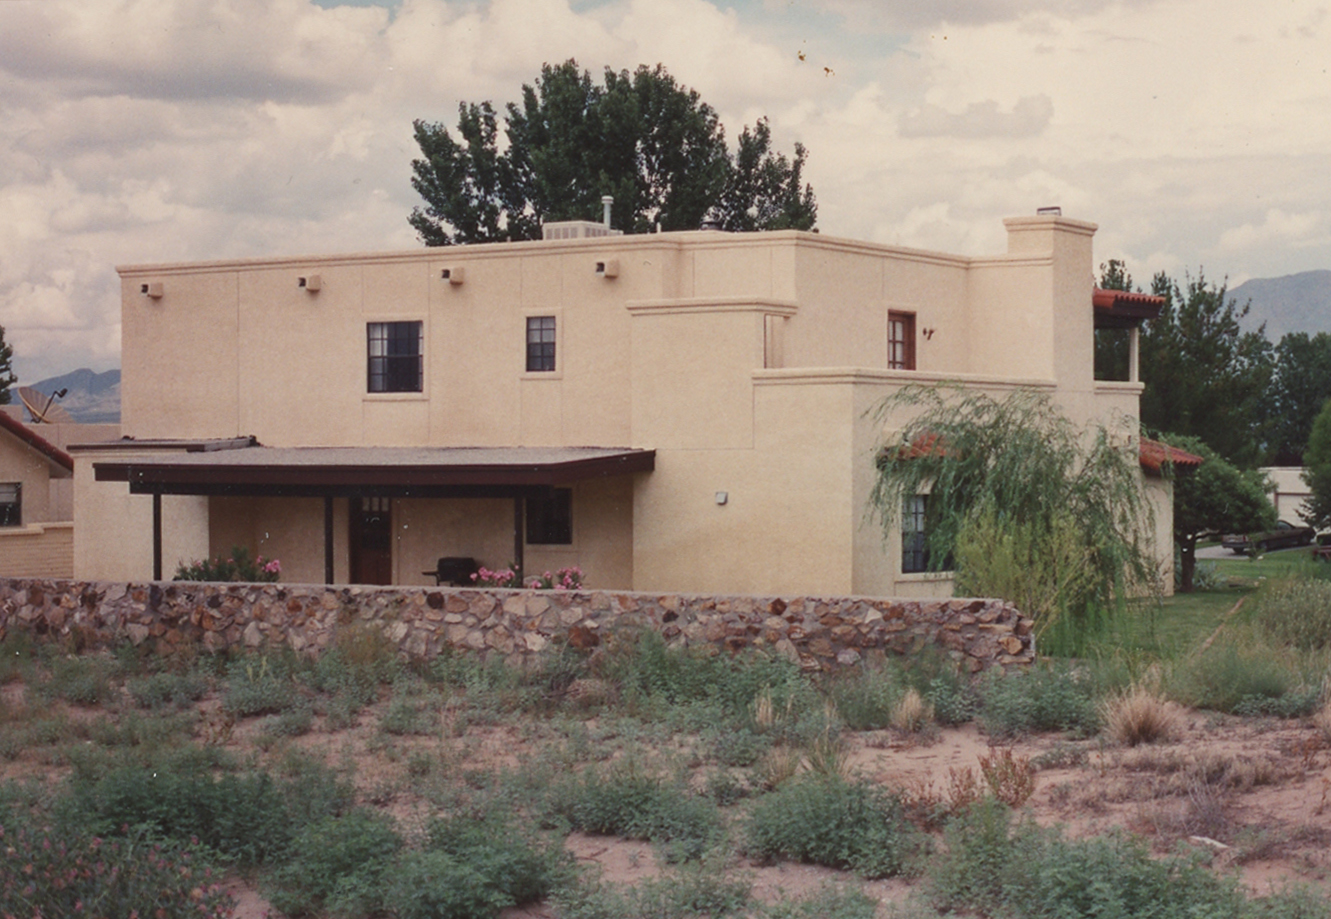 View from the desert side of Ann's house in Santa Teresa. 
Photo ©1991 Ann James Massey